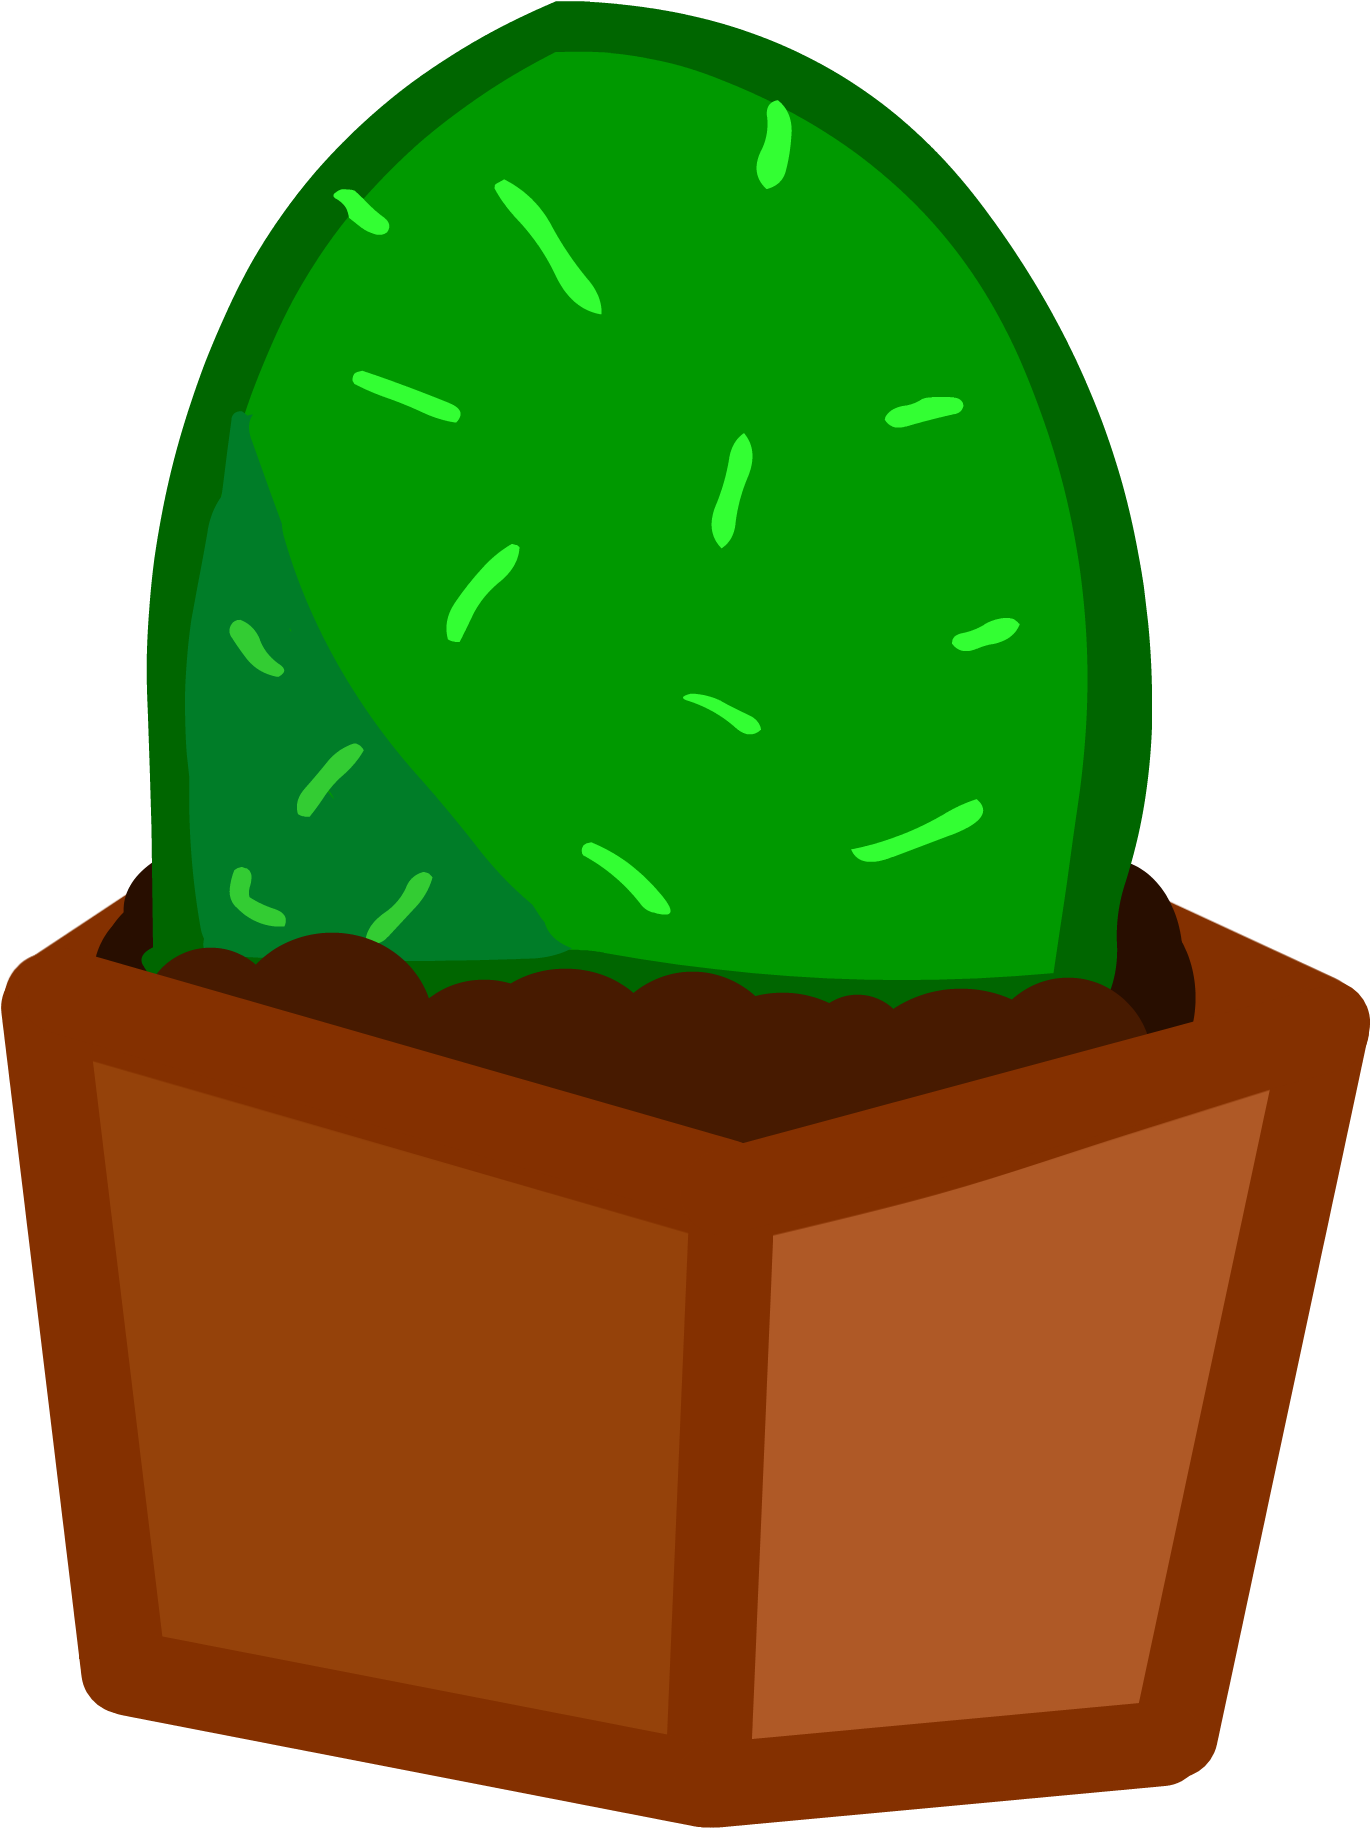 Image - Cactus (1900x1880)